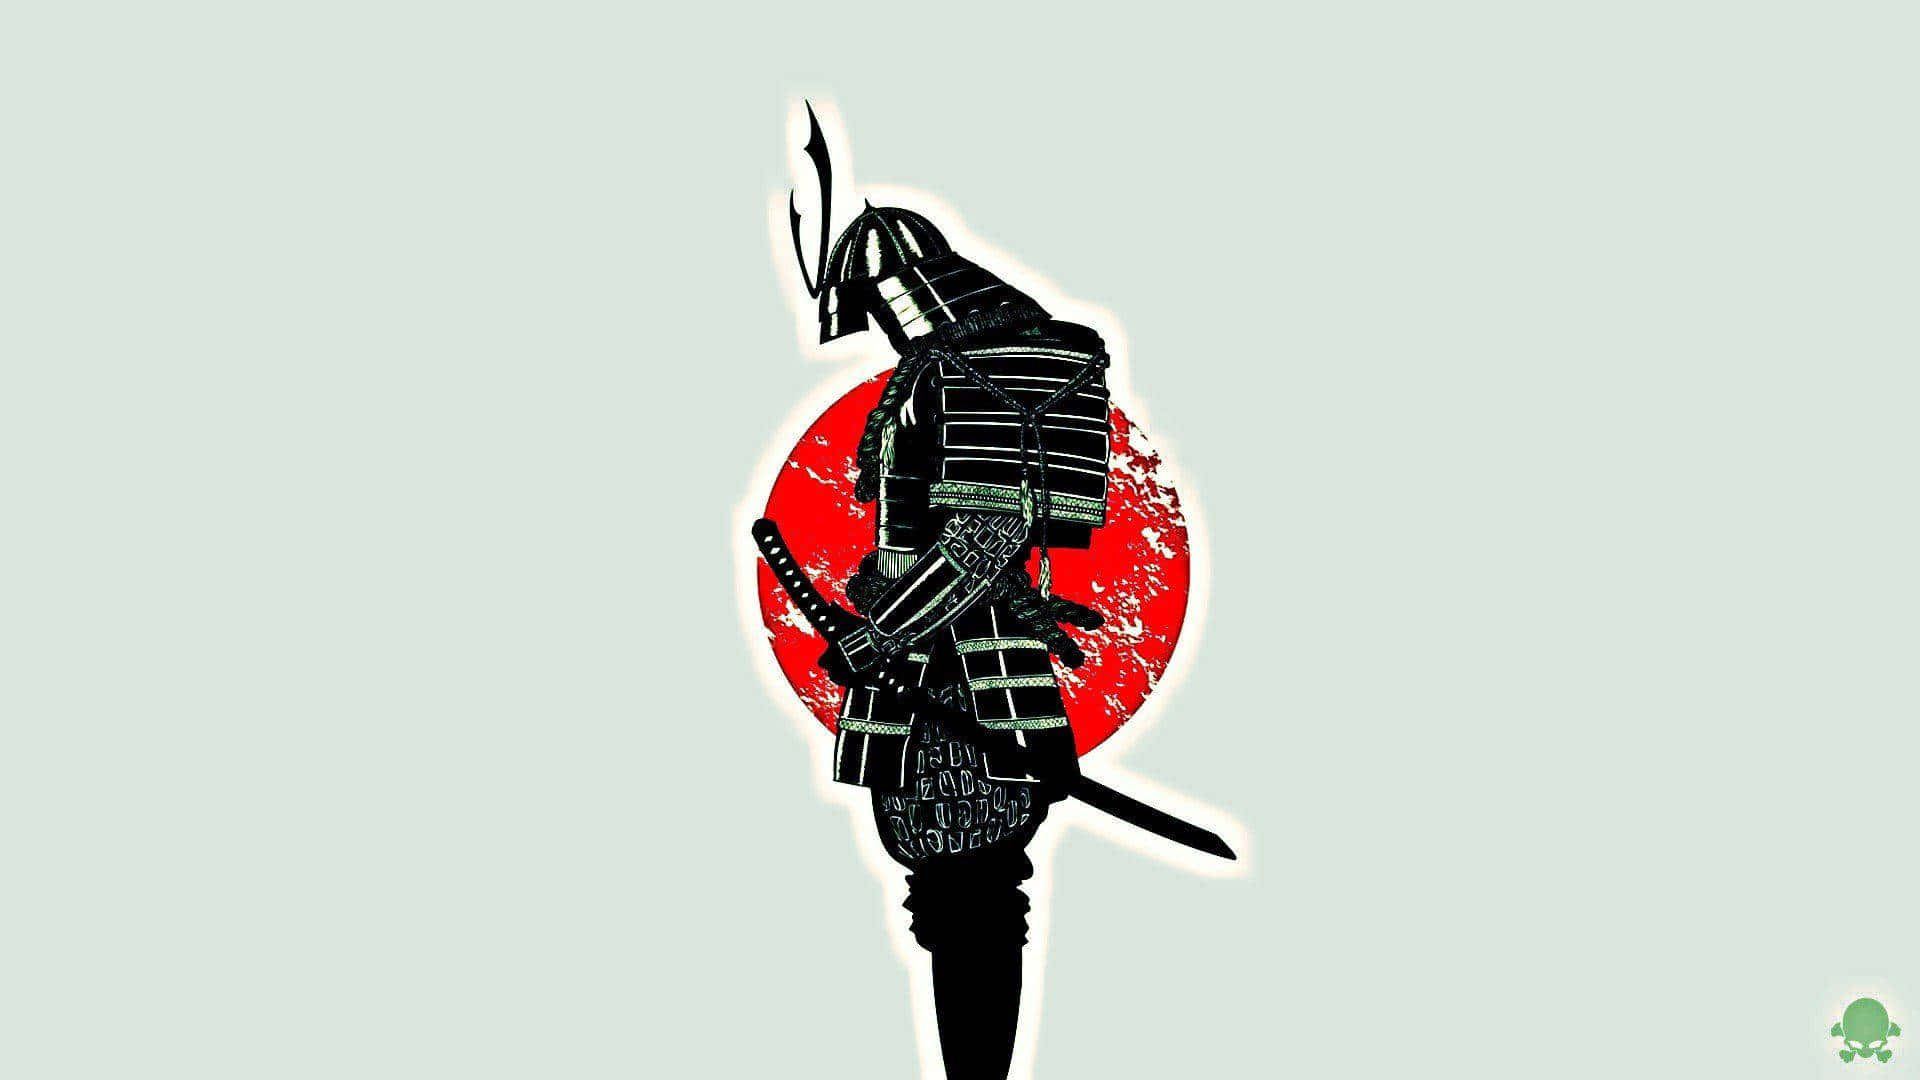 100+] Dark Samurai Wallpapers